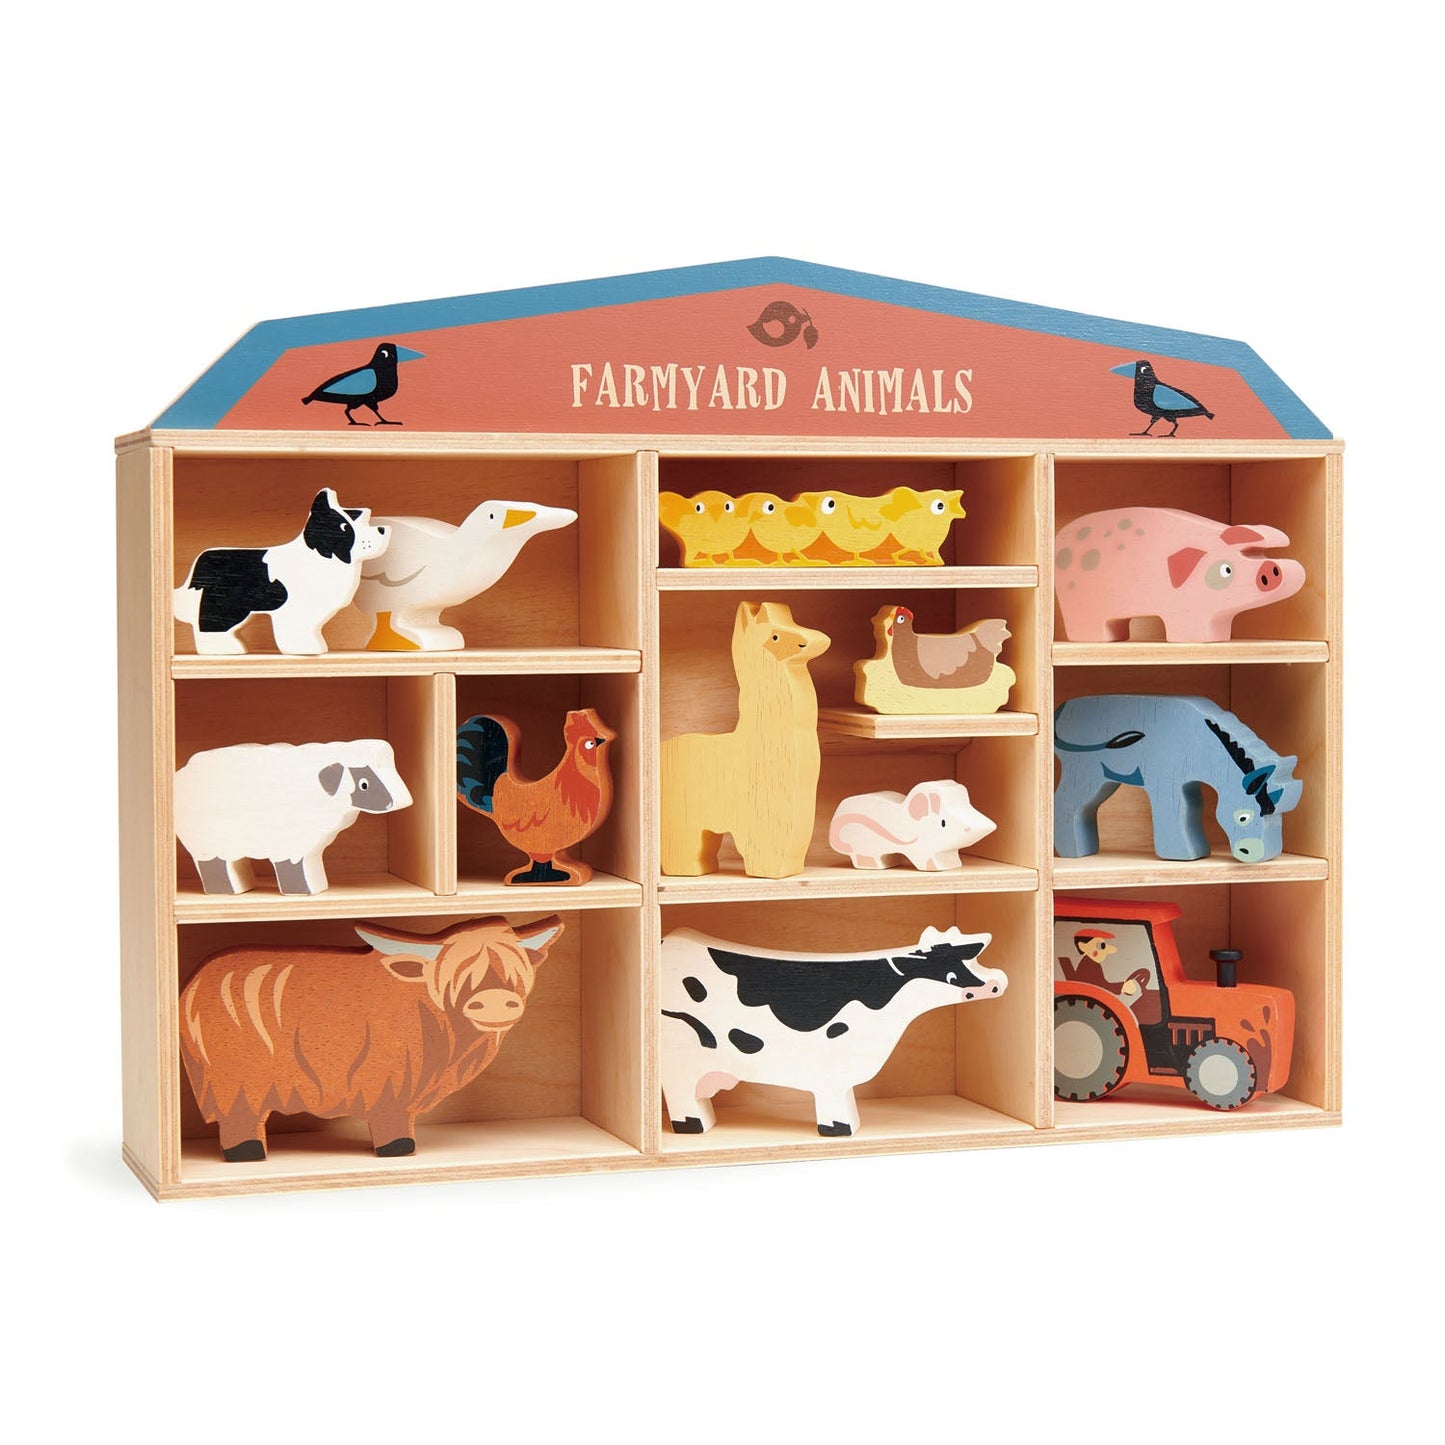 Tender Leaf Toys 13 Farmyard Animals & Shelf